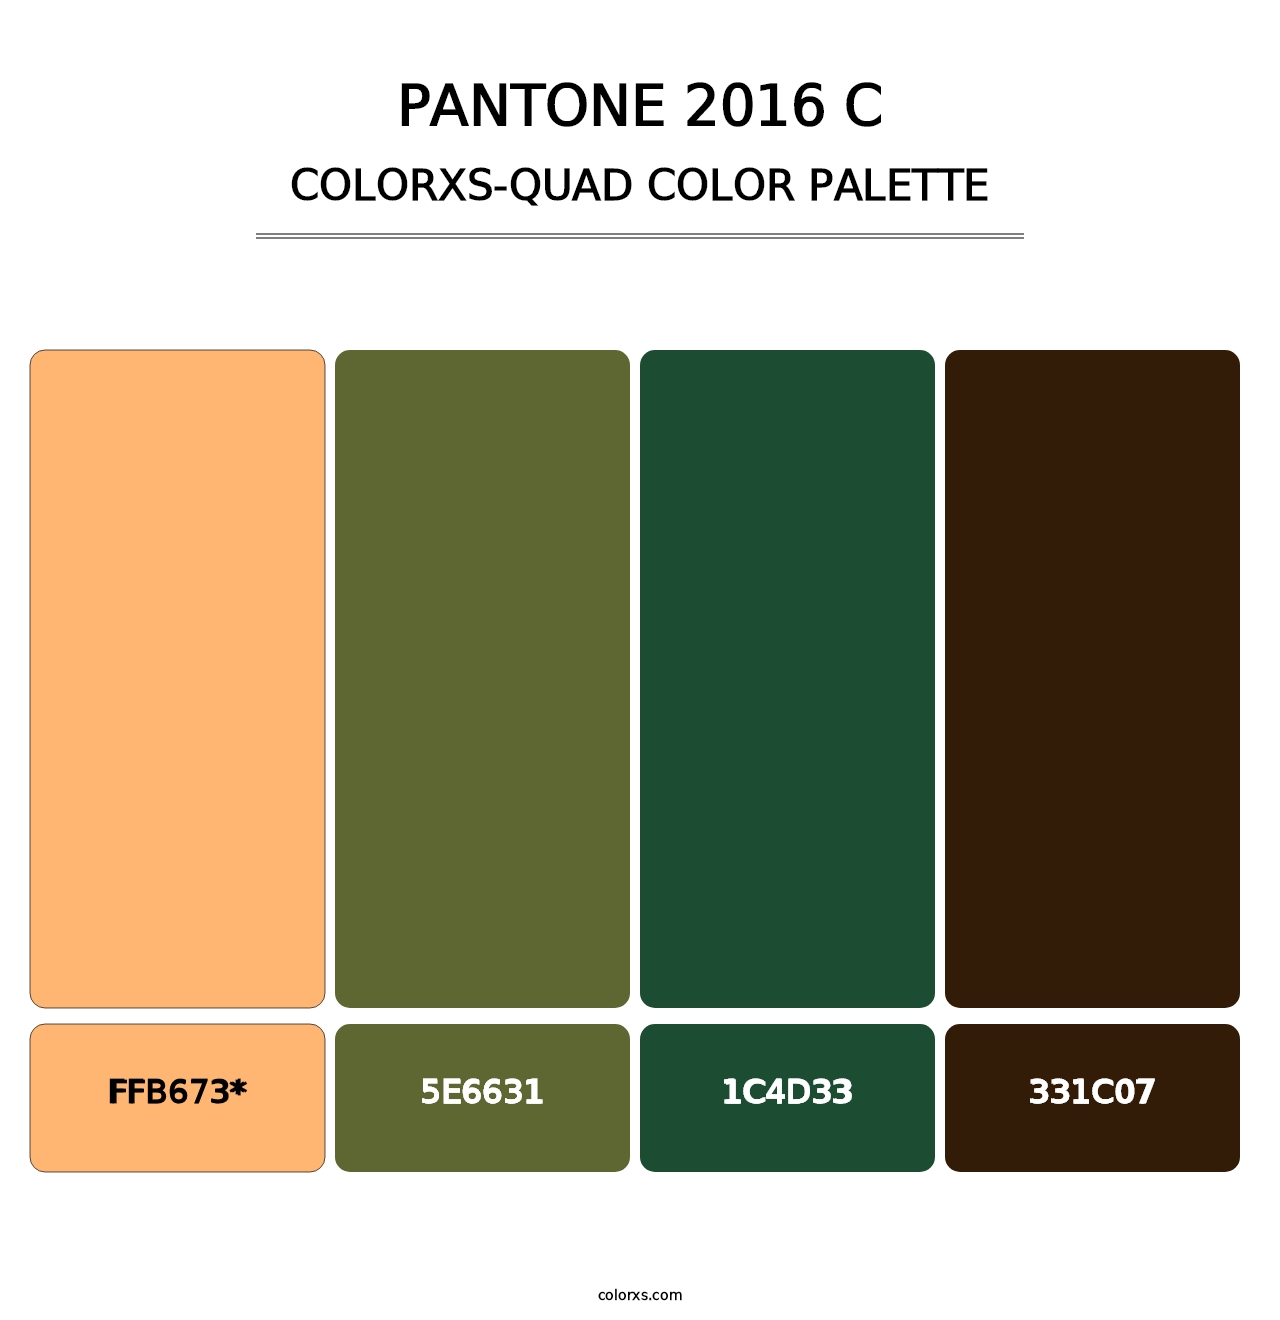 PANTONE 2016 C - Colorxs Quad Palette